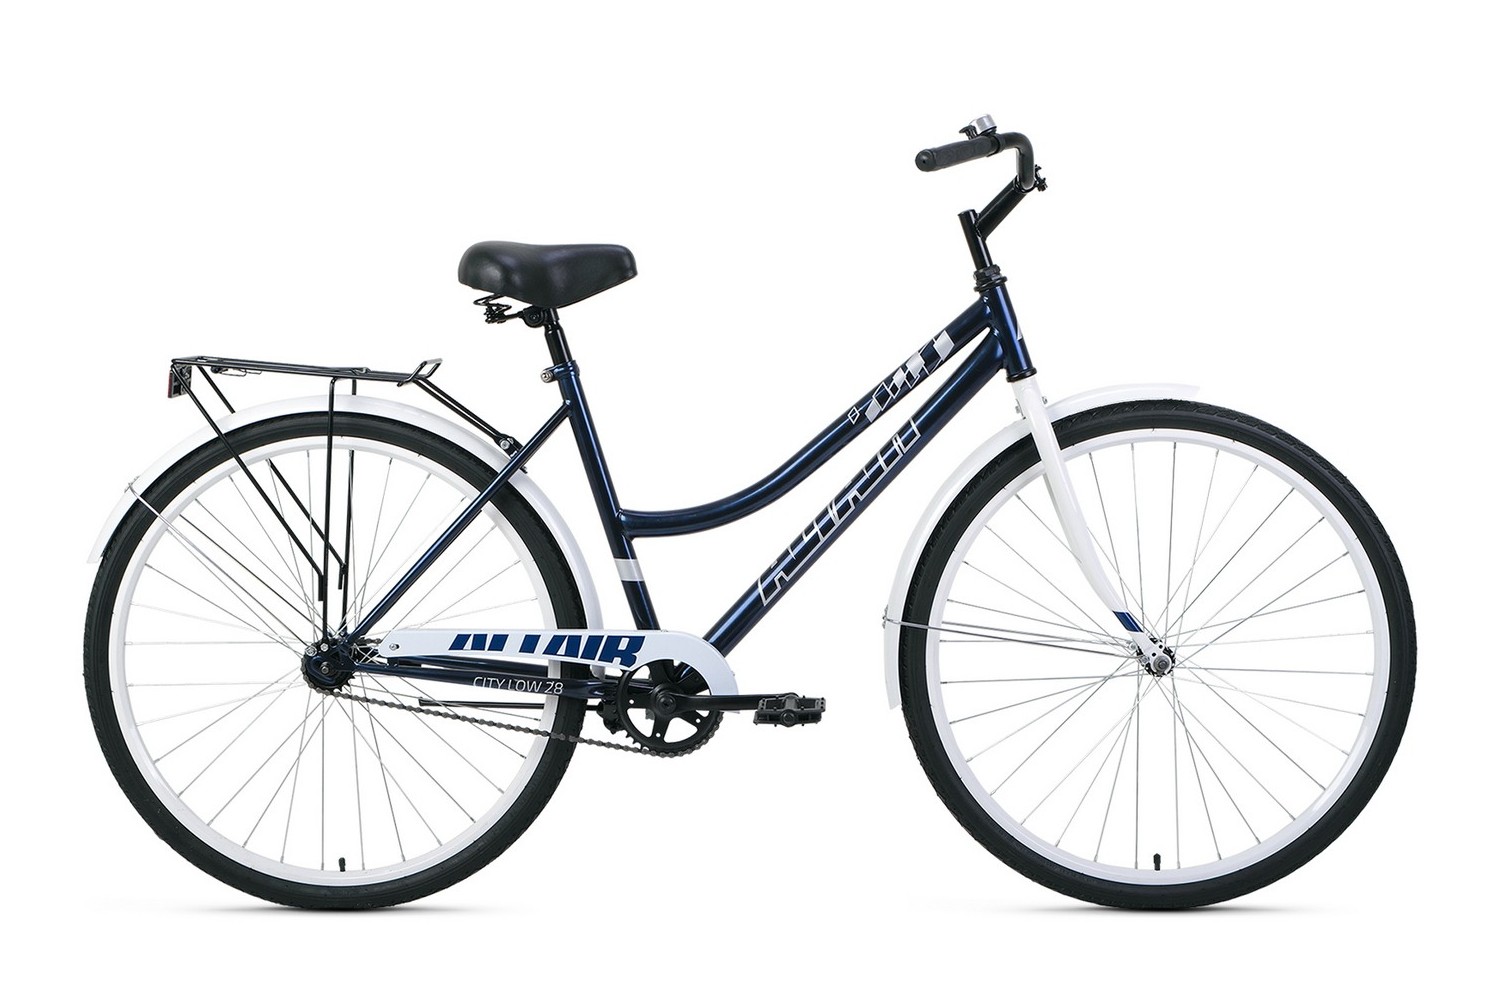 Дорожный велосипед Altair City 28 low, год 2022, цвет Синий-Белый, ростовка 19